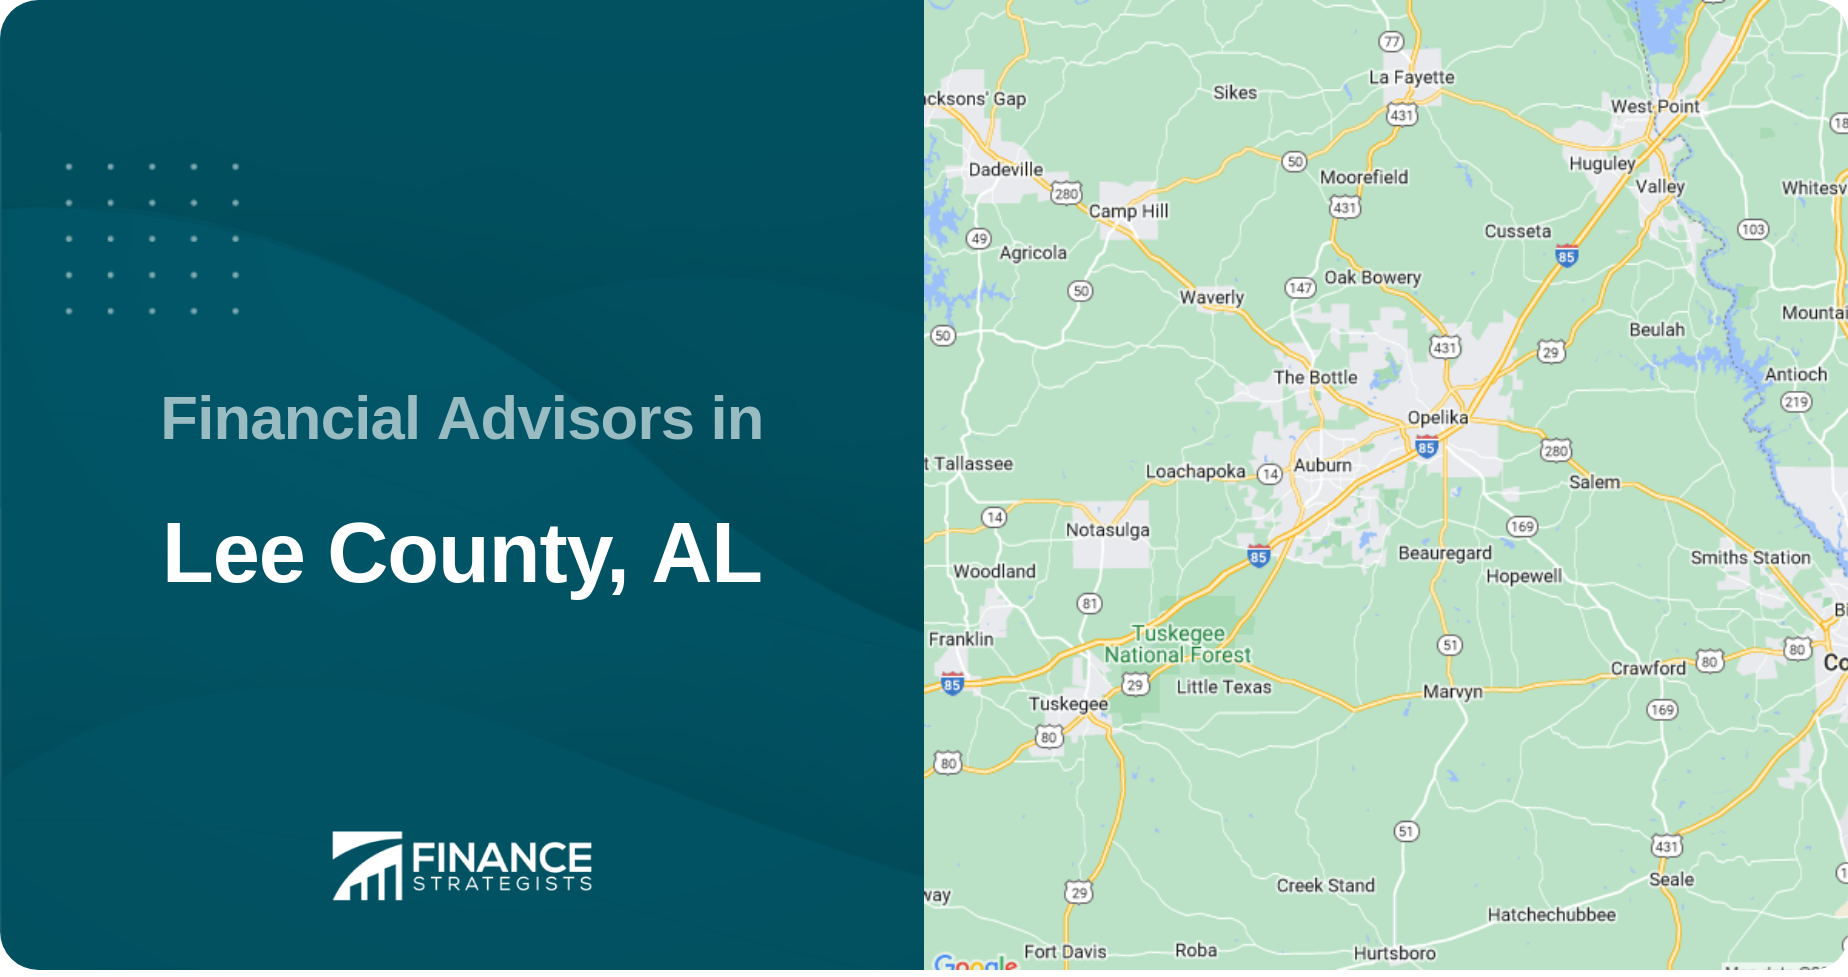 Financial Advisors in Lee County, AL